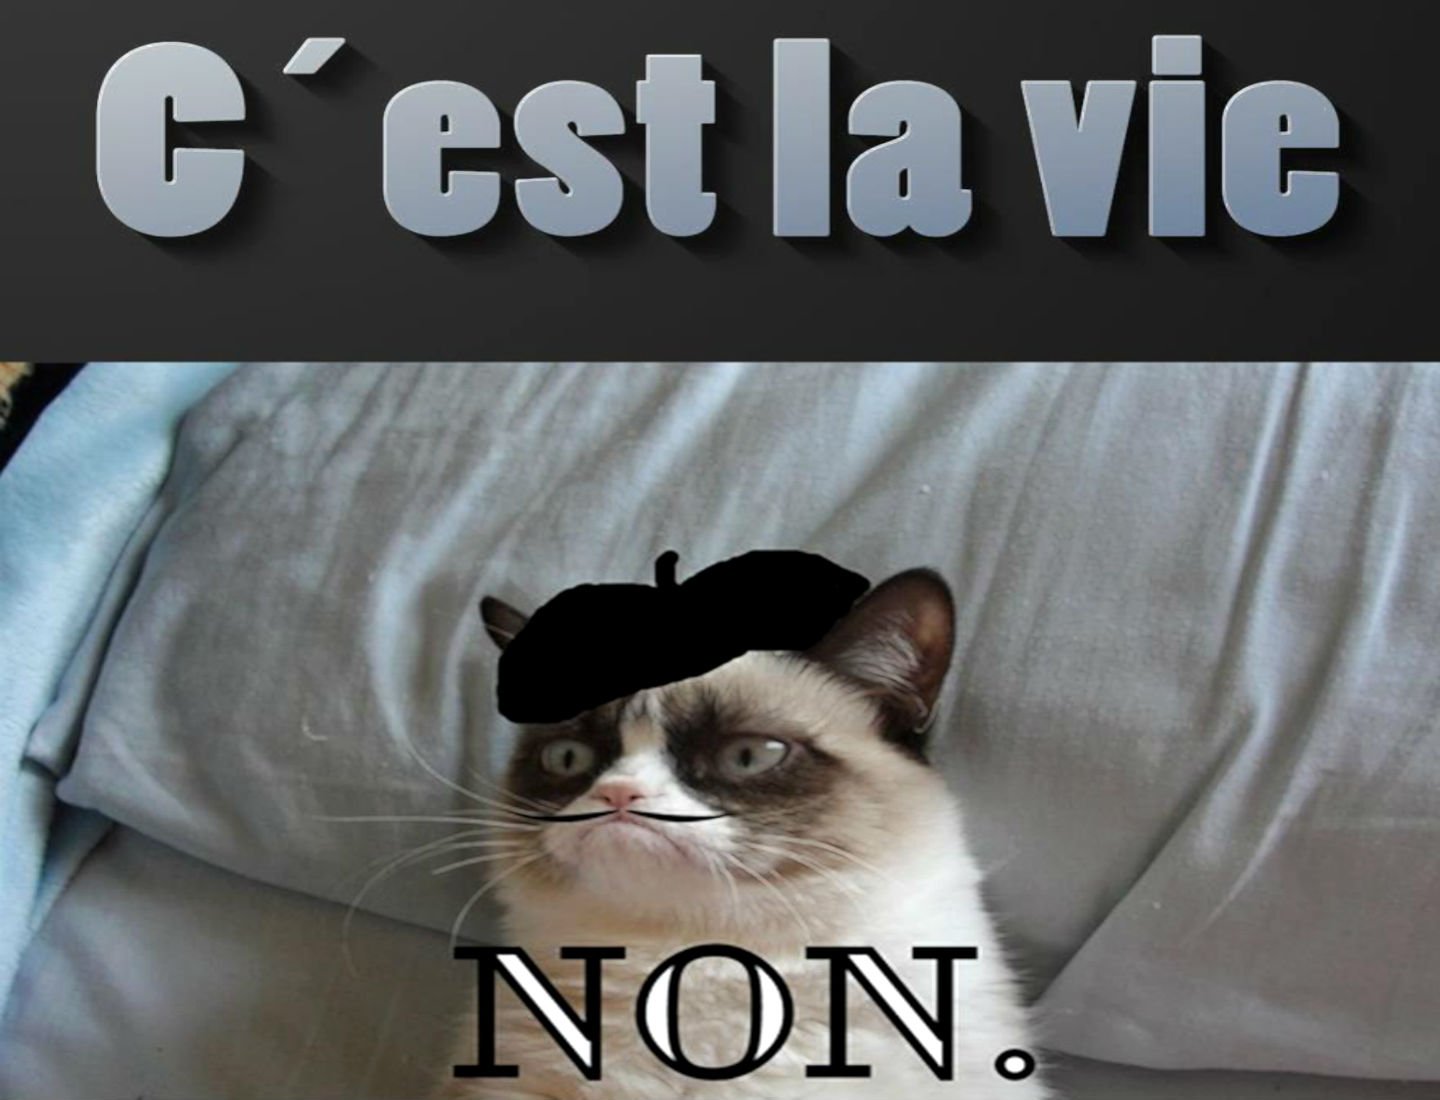 cat, Meme, Quote, Funny, Humor, Grumpy, French, Sadic Wallpaper